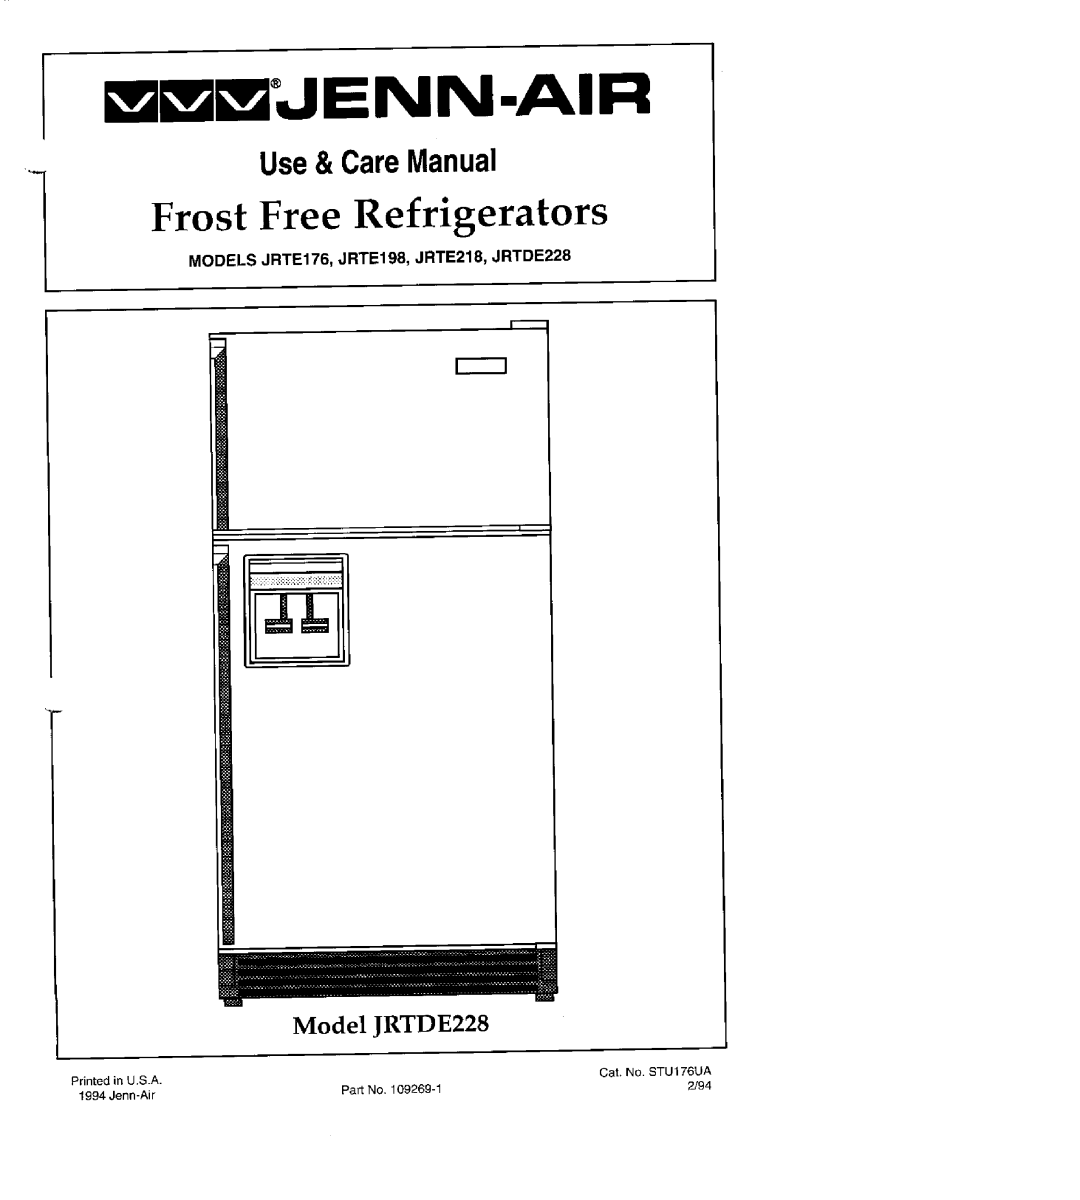 Jenn-Air manual MODELS JRTE17fi, JRTE198, JRTE218, JRTDE228, m mJENN.AIR, Frost Free Refrigerators, Use&CareManual 